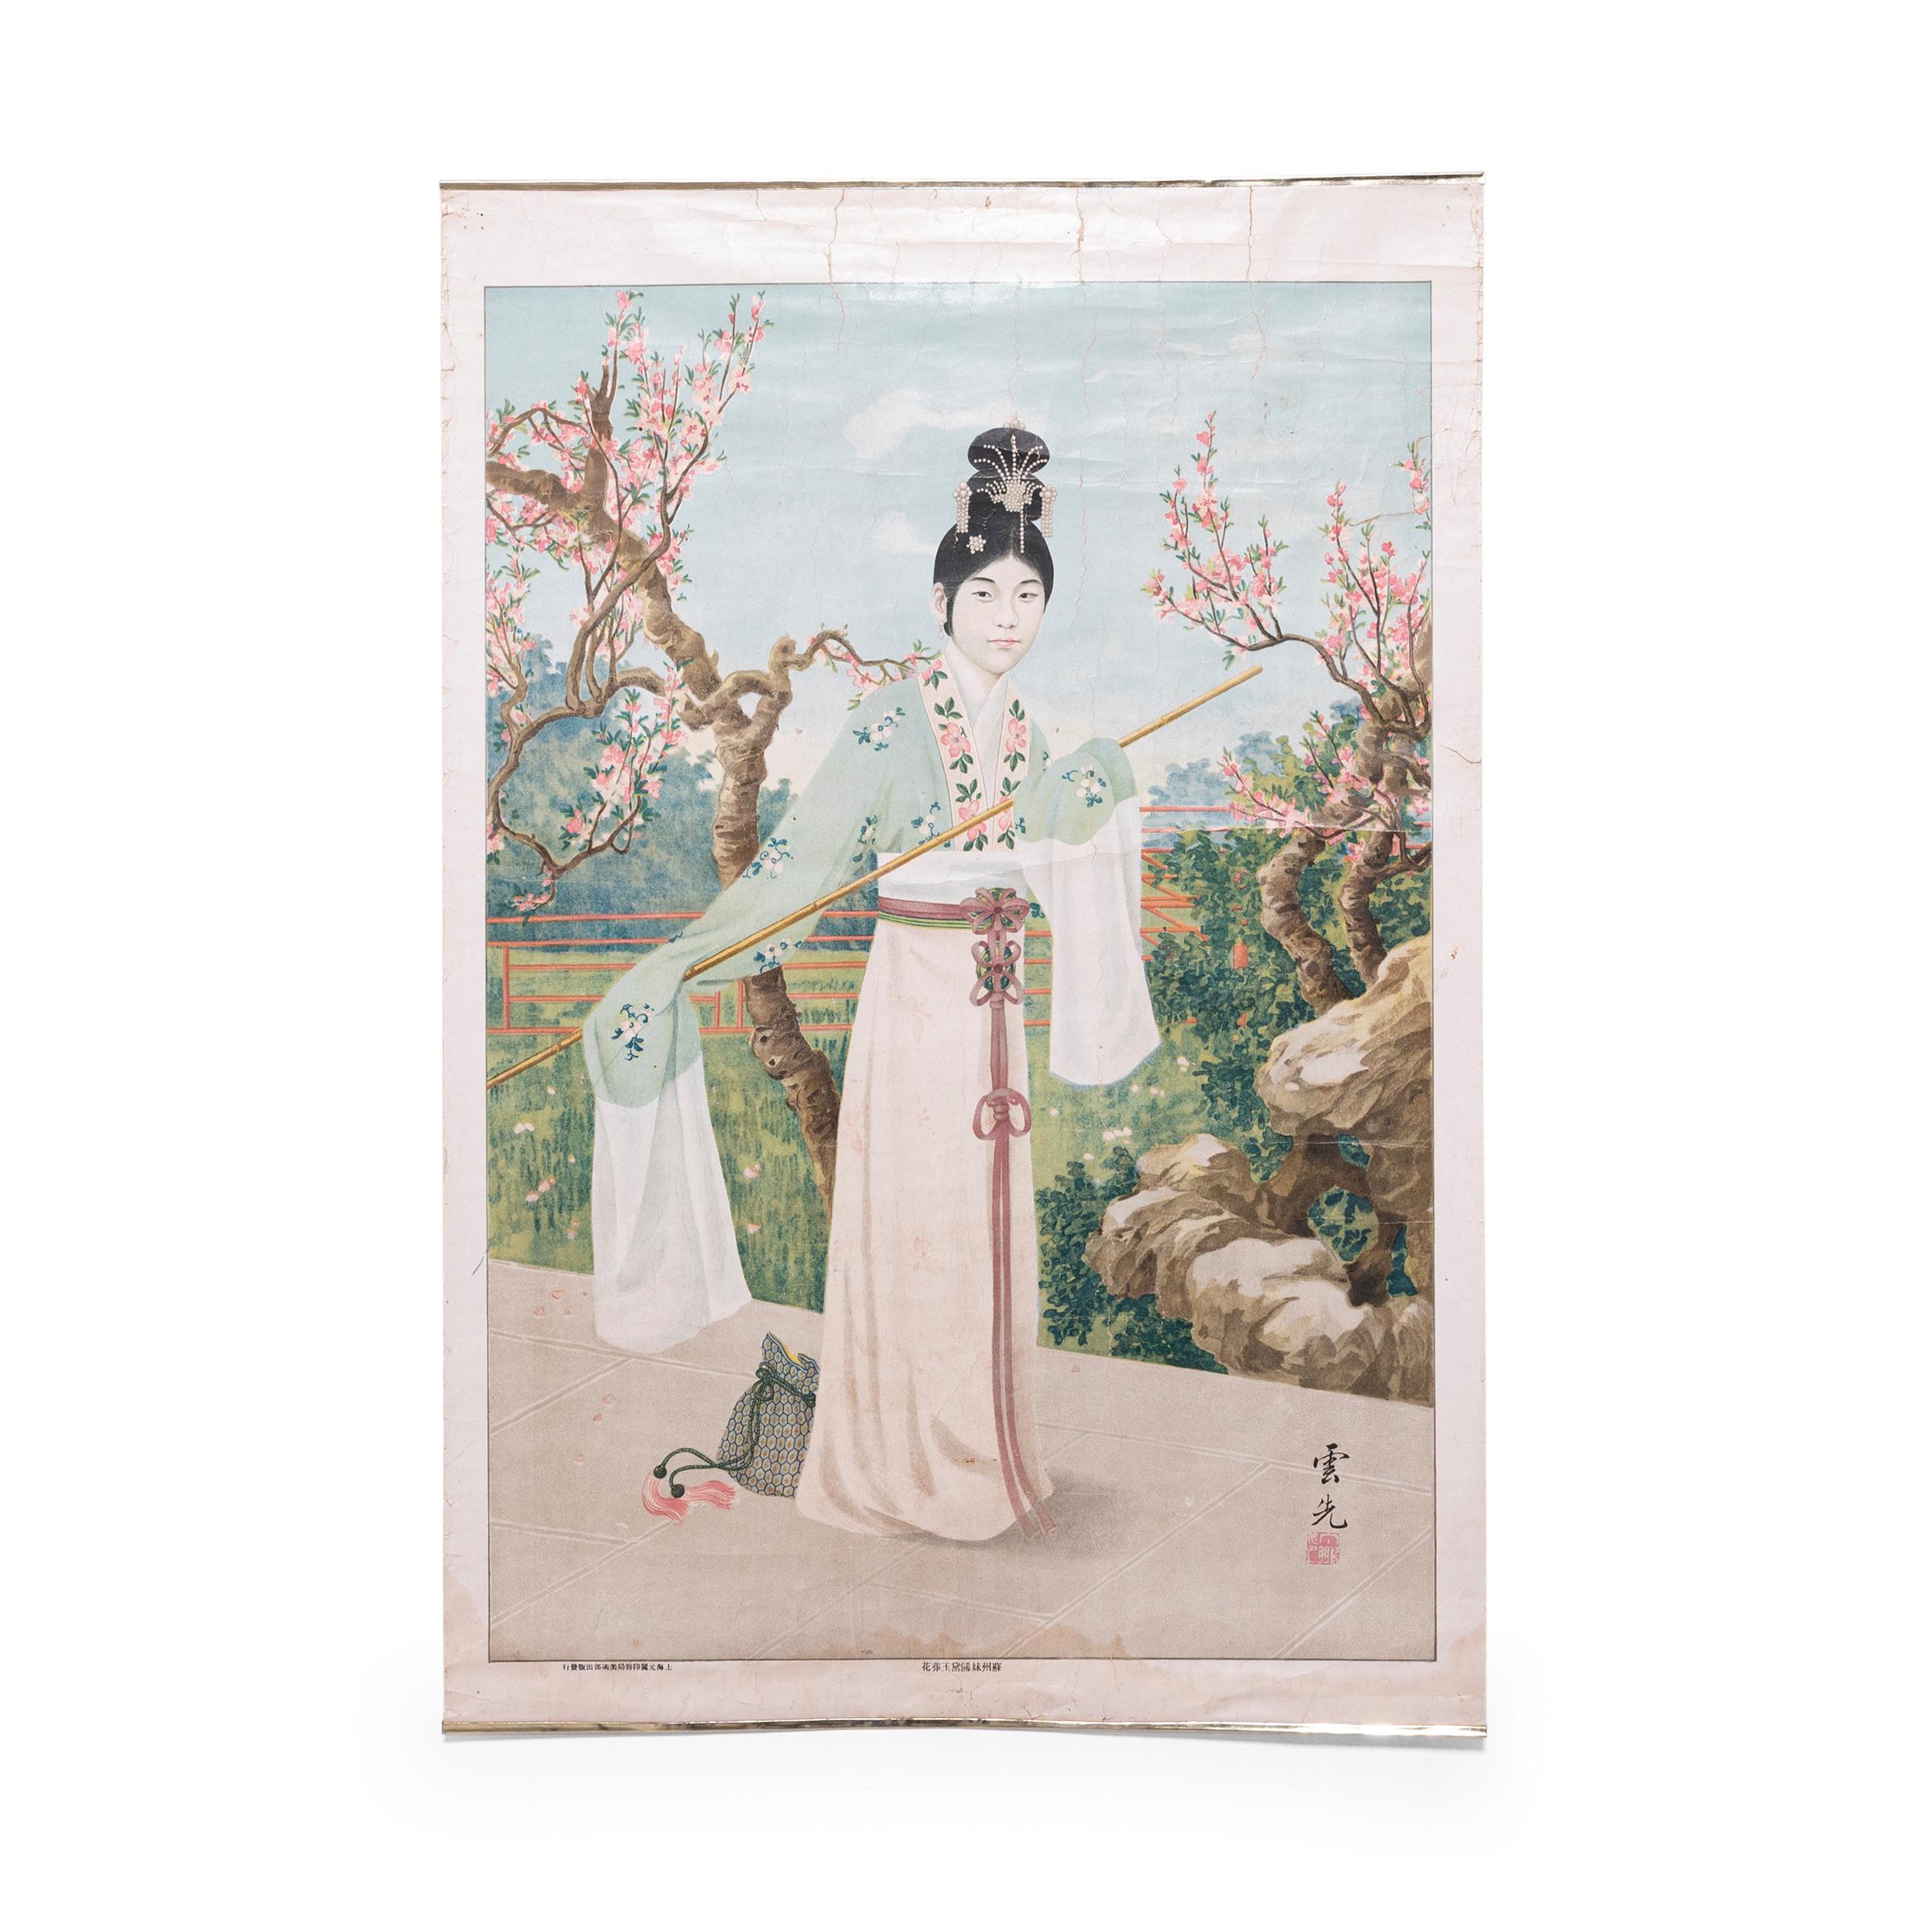 Unknown Landscape Print – Chinesisches Werbeplakat im Vintage-Stil, um 1930